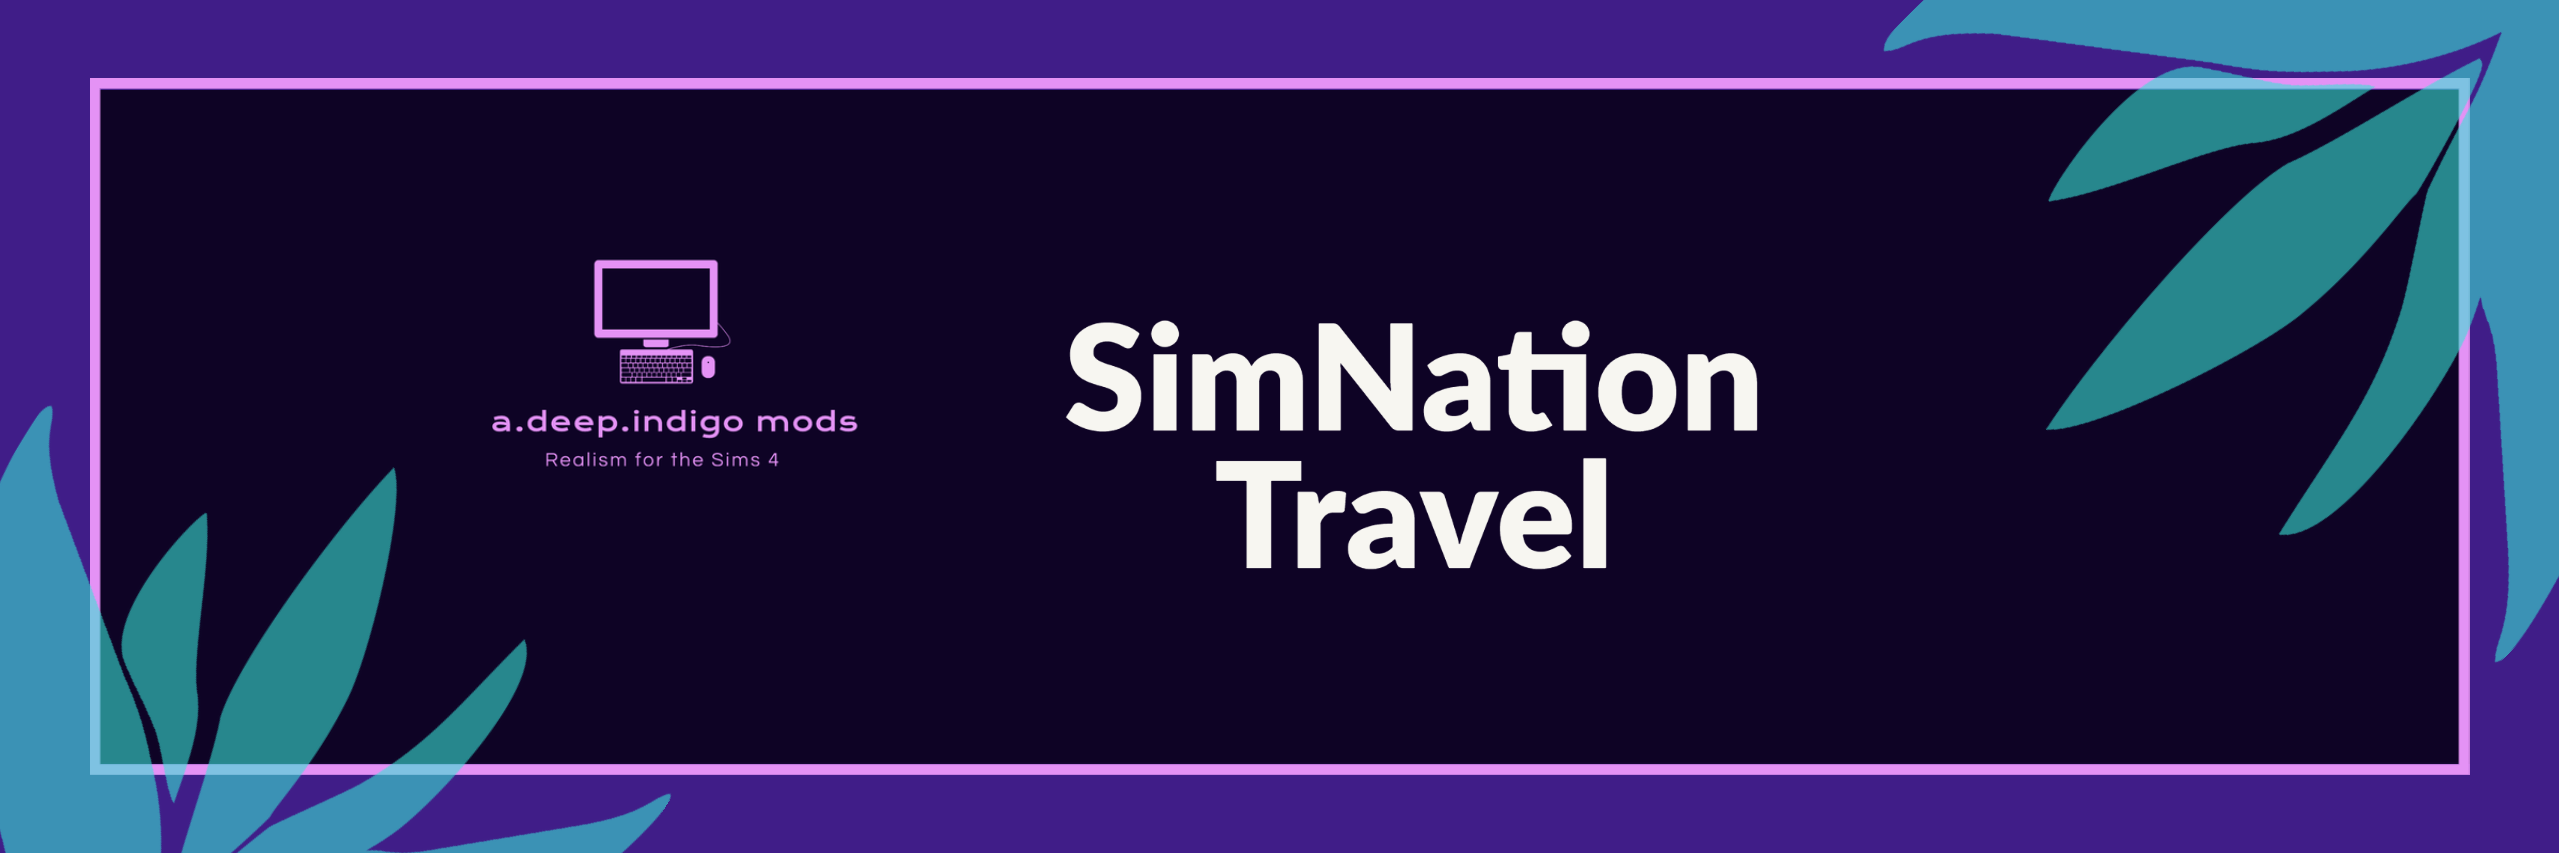 SimNation Travel